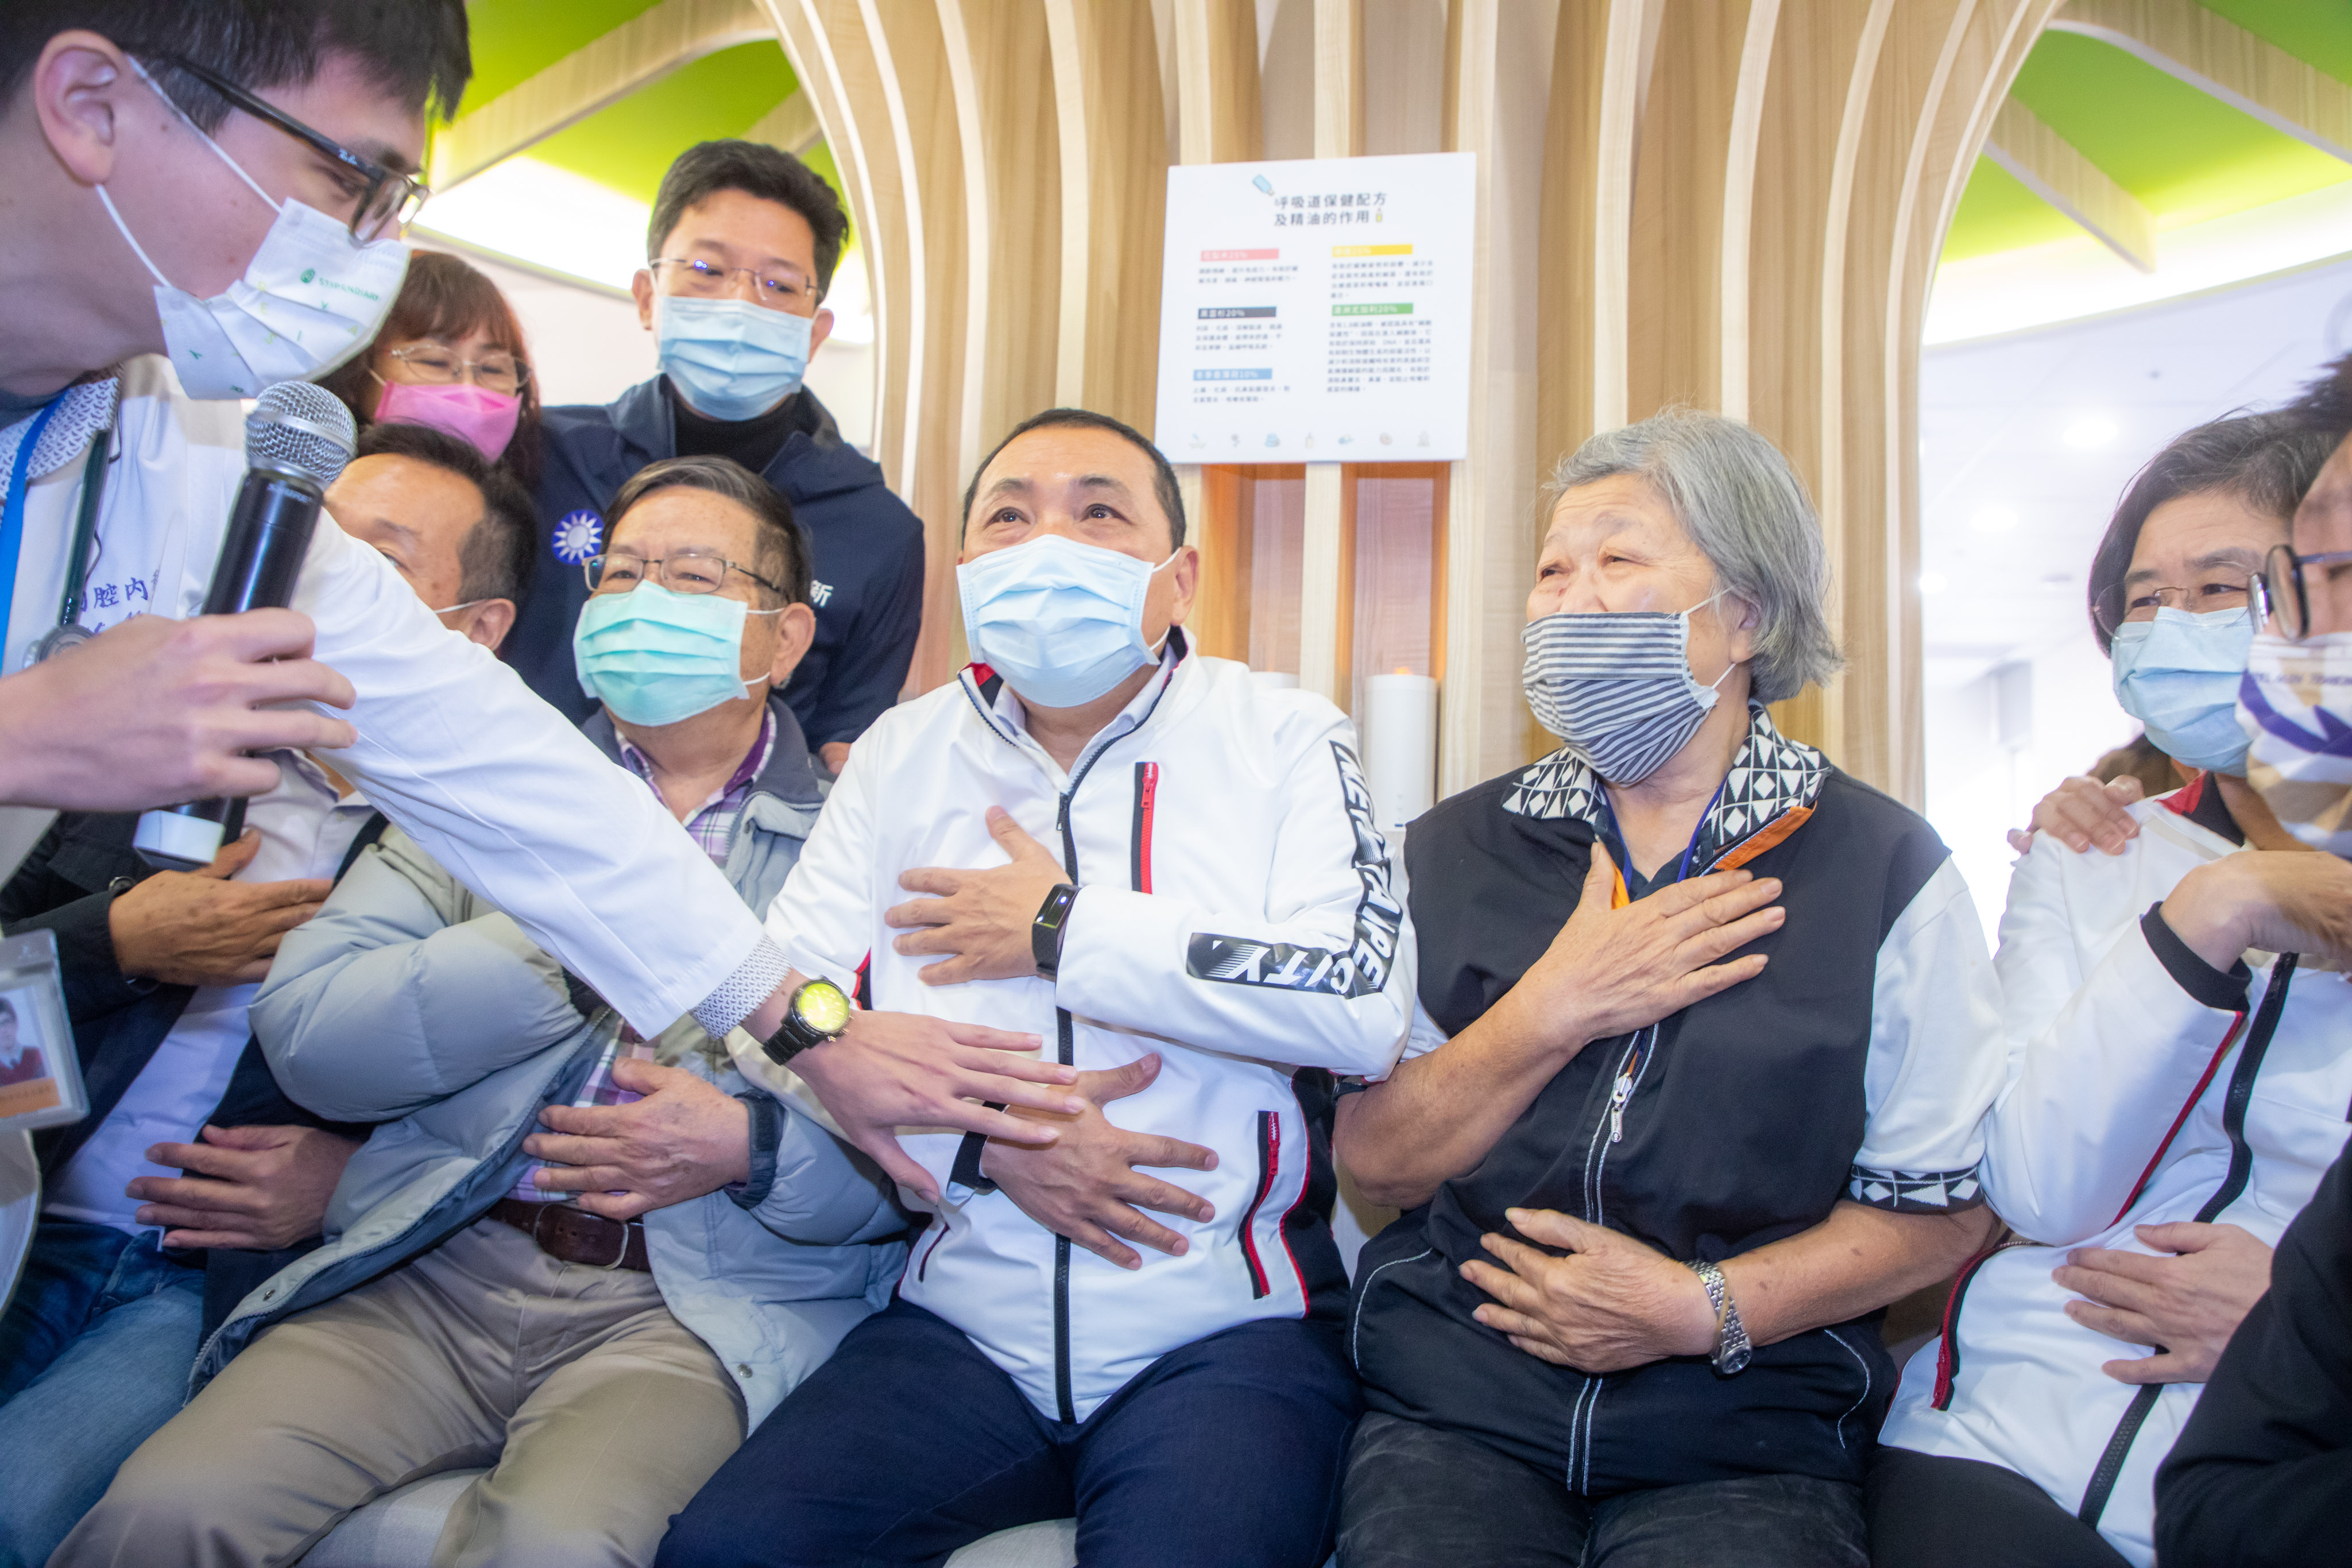 侯友宜市長參觀托老中心體驗芳療呼吸法調整呼吸